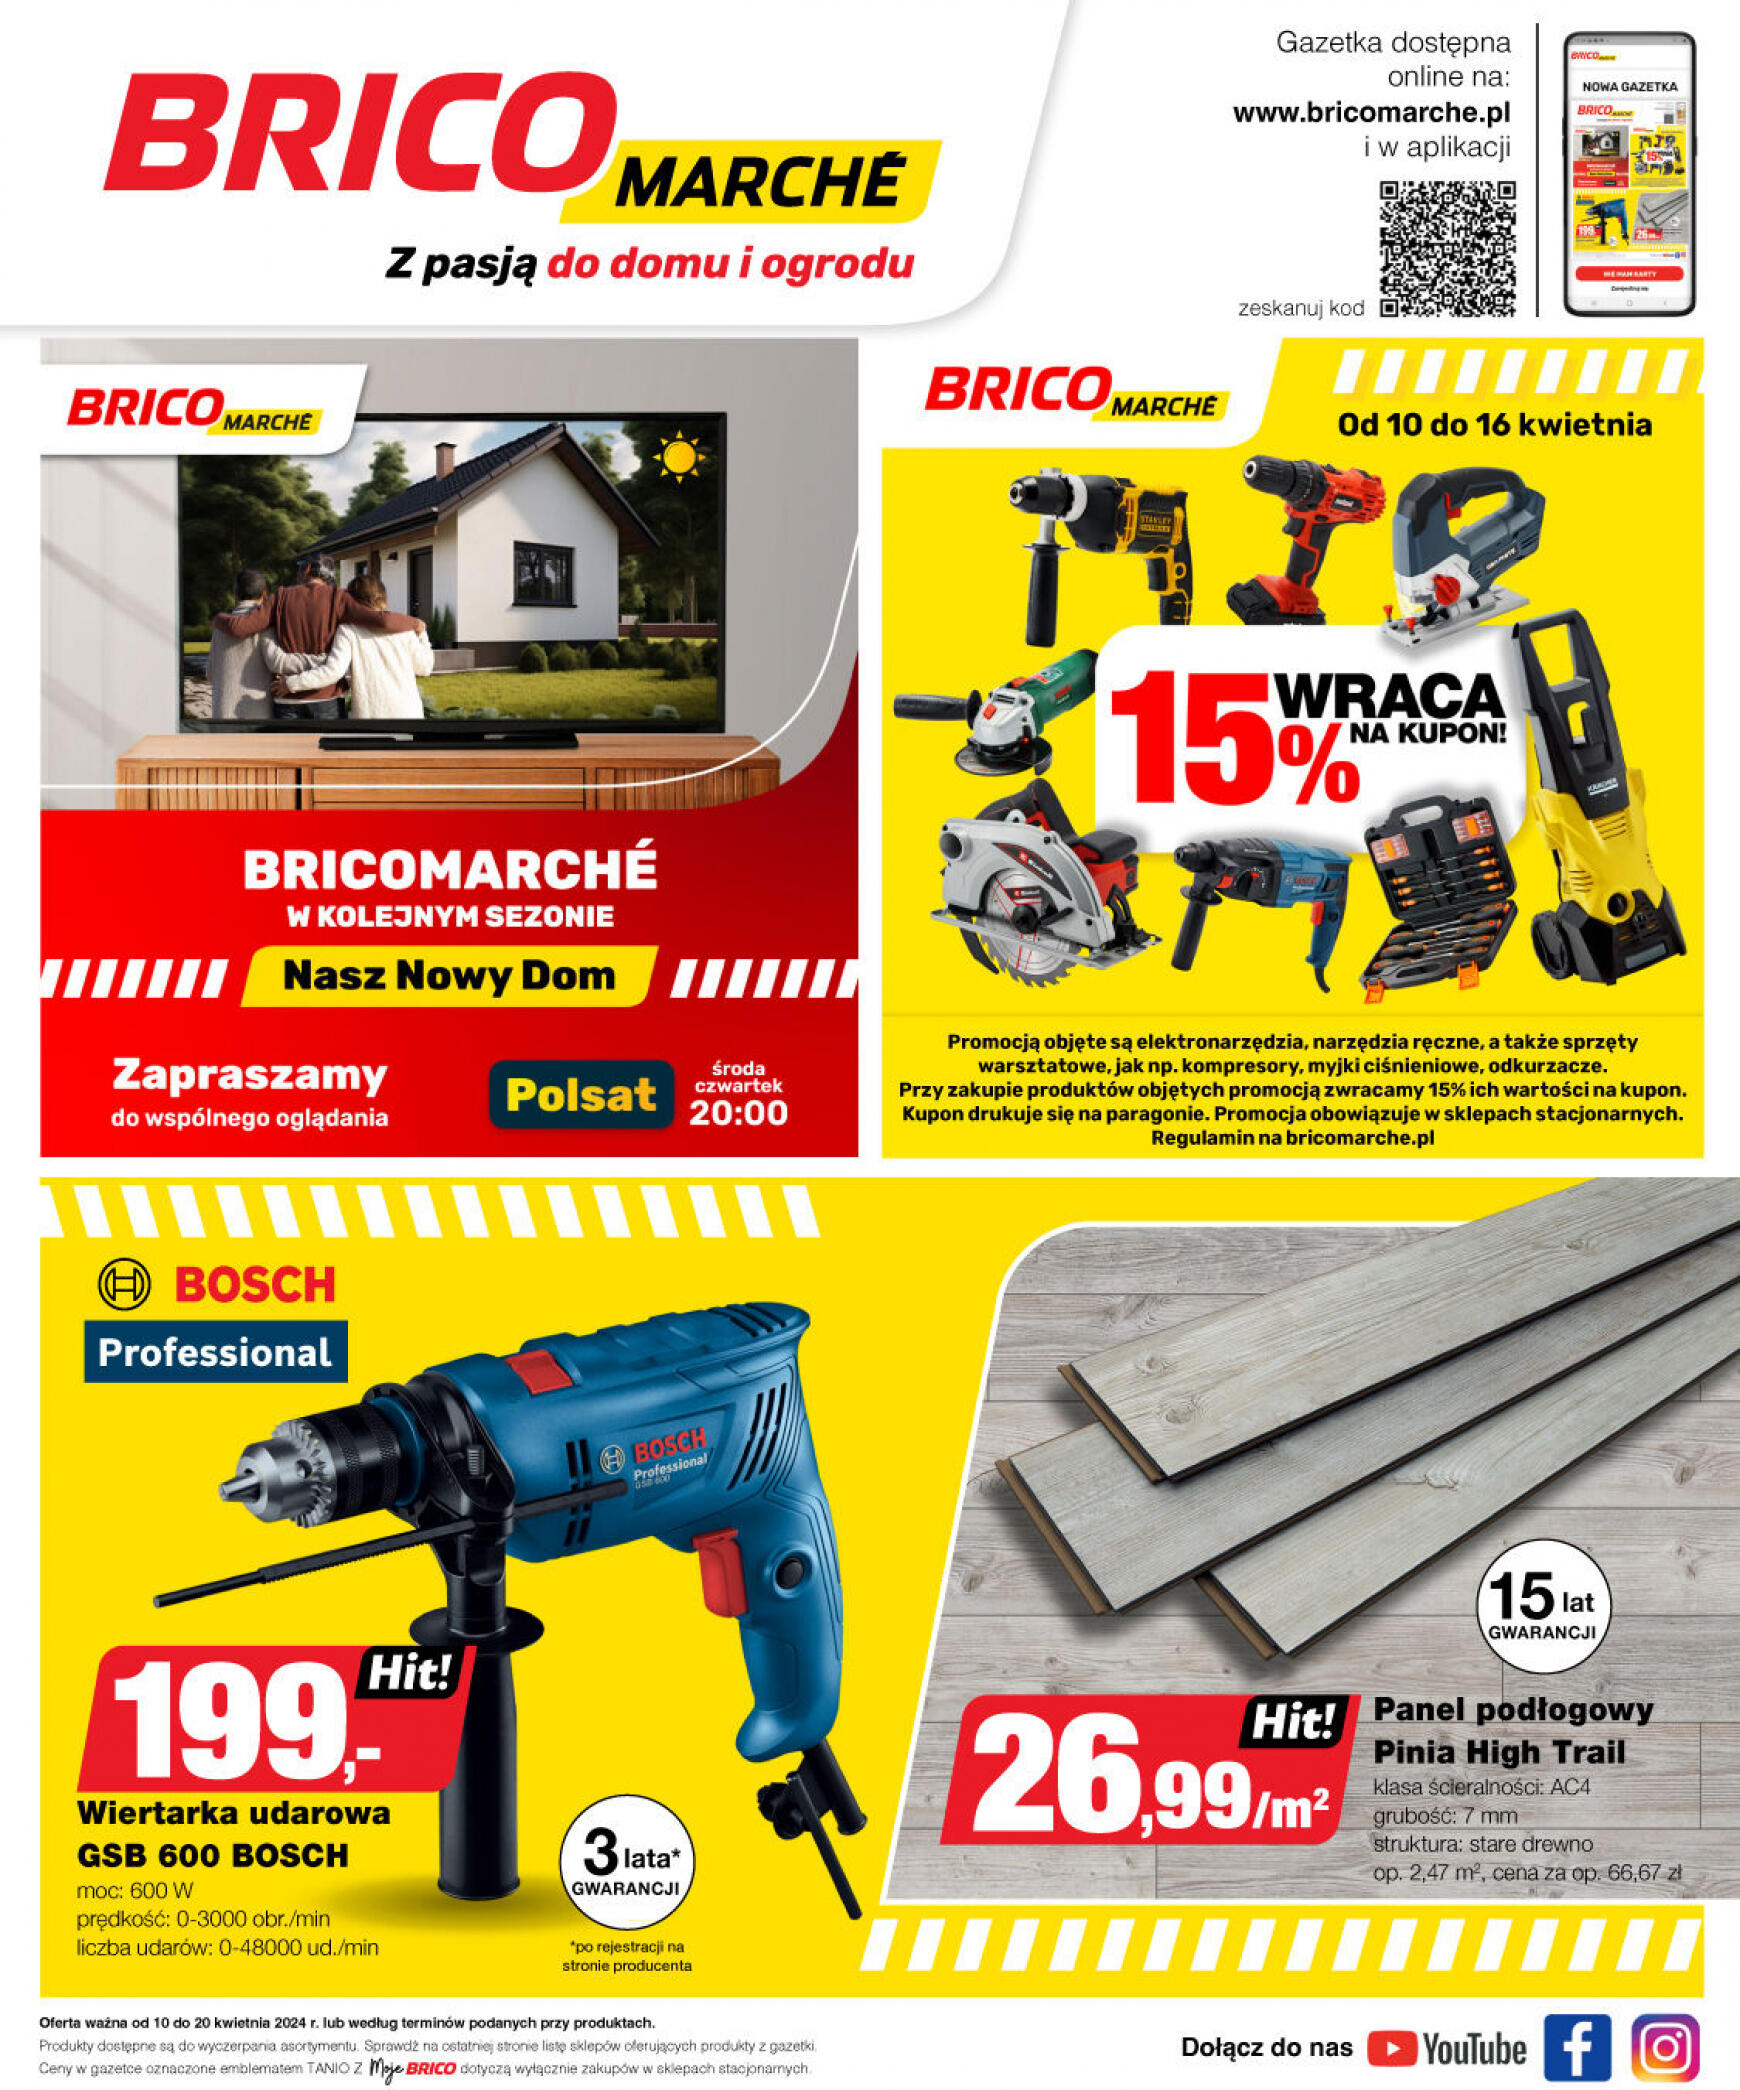 brico-marche - Bricomarché gazetka aktualna ważna od 10.04. - 20.04. - page: 13